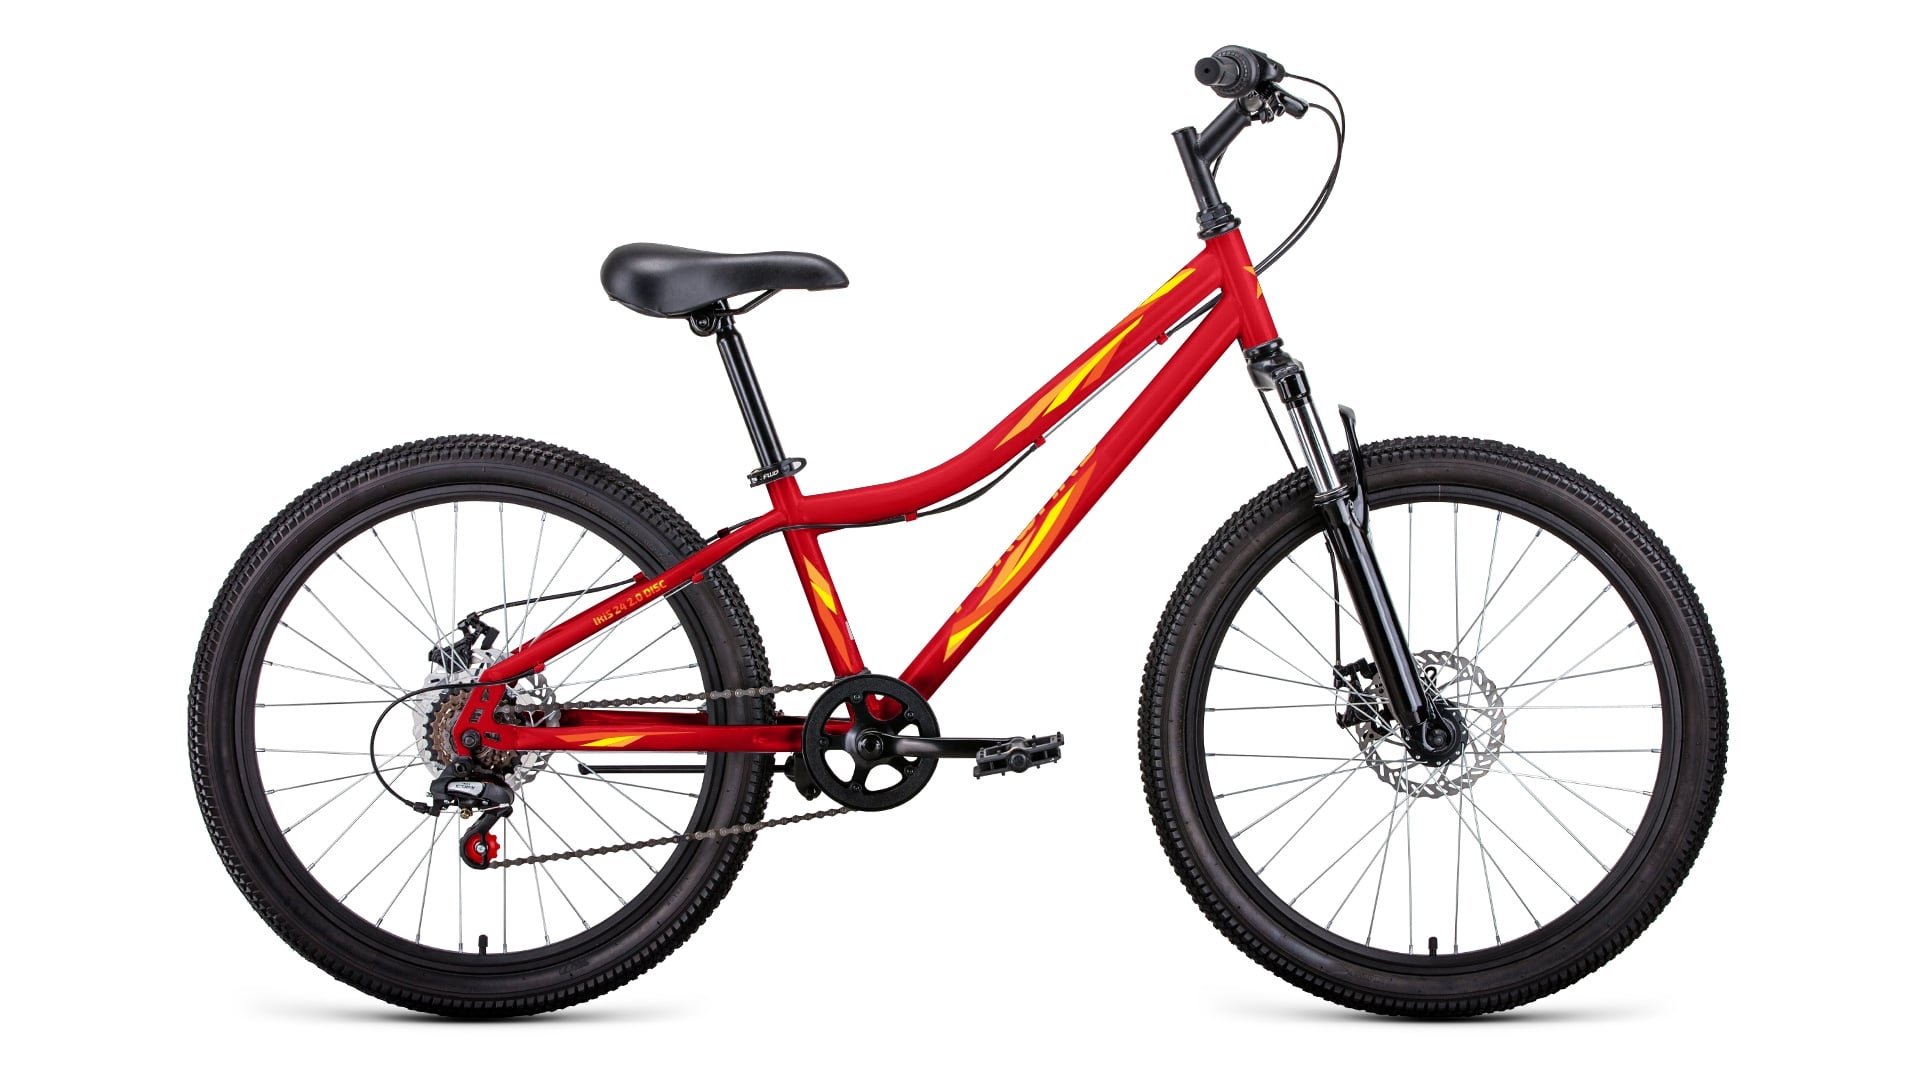 Подростковый велосипед Forward Iris 24 2.0 D, год 2022, цвет Красный-Желтый